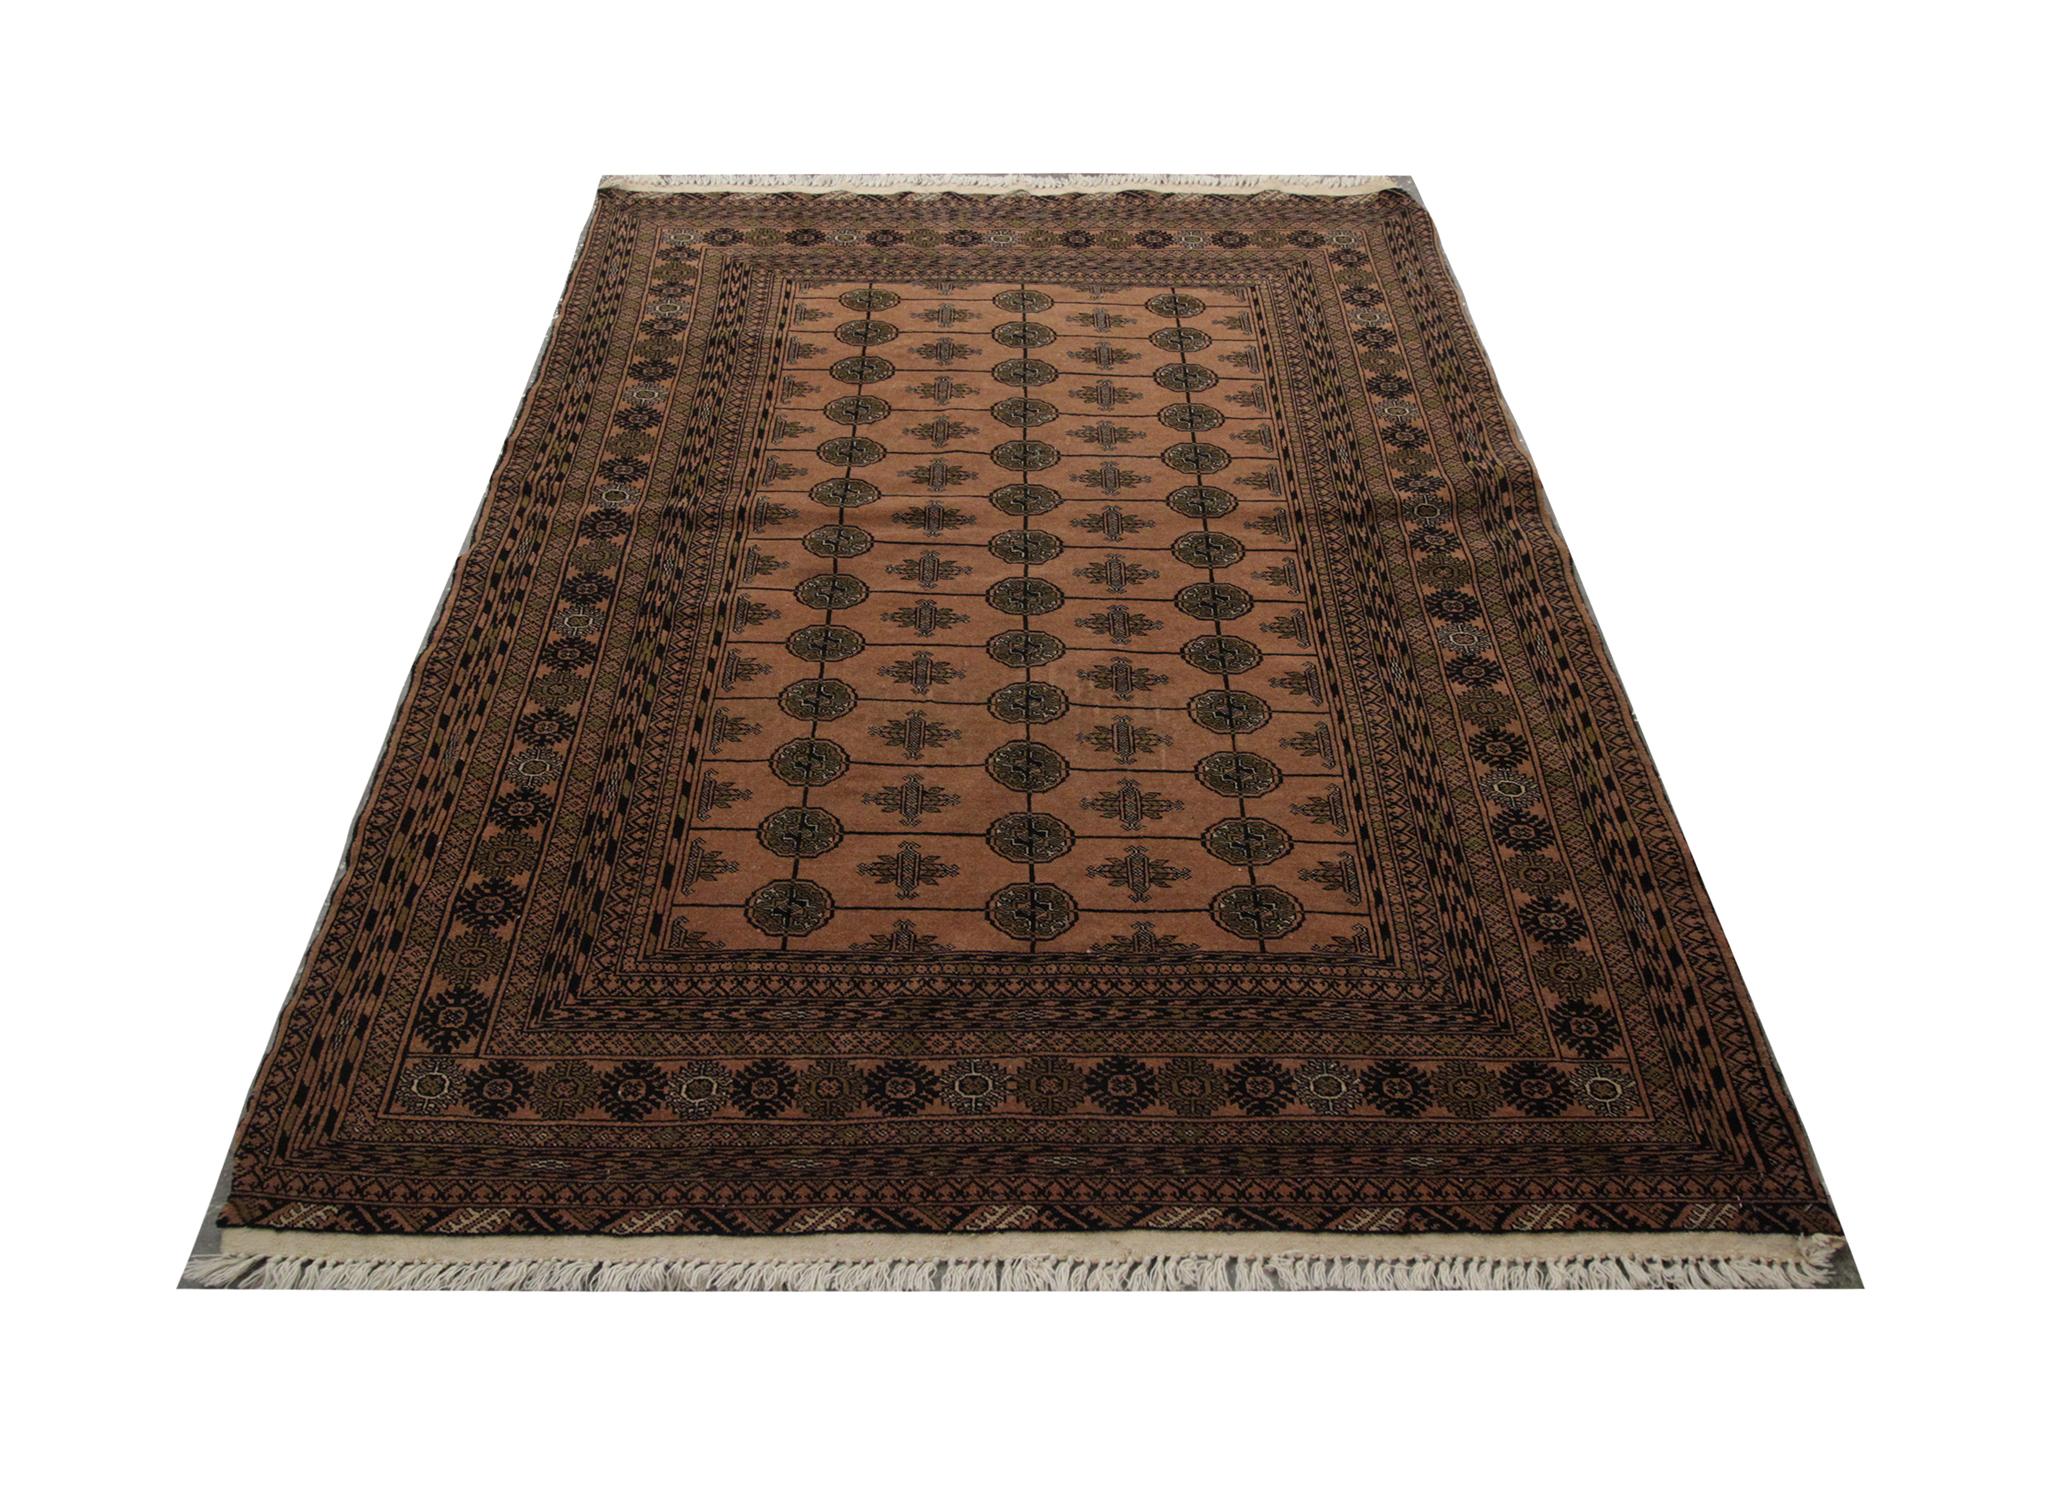 Handgefertigter Teppich Orientteppich Minimale Farben wurden in diesem traditionellen Bokhara-Teppich verwendet, Braun ist die Hauptfarbe mit drei Reihen von schwarzen achteckigen Motiven als zentrales Design. Unterstützt wird dies durch eine